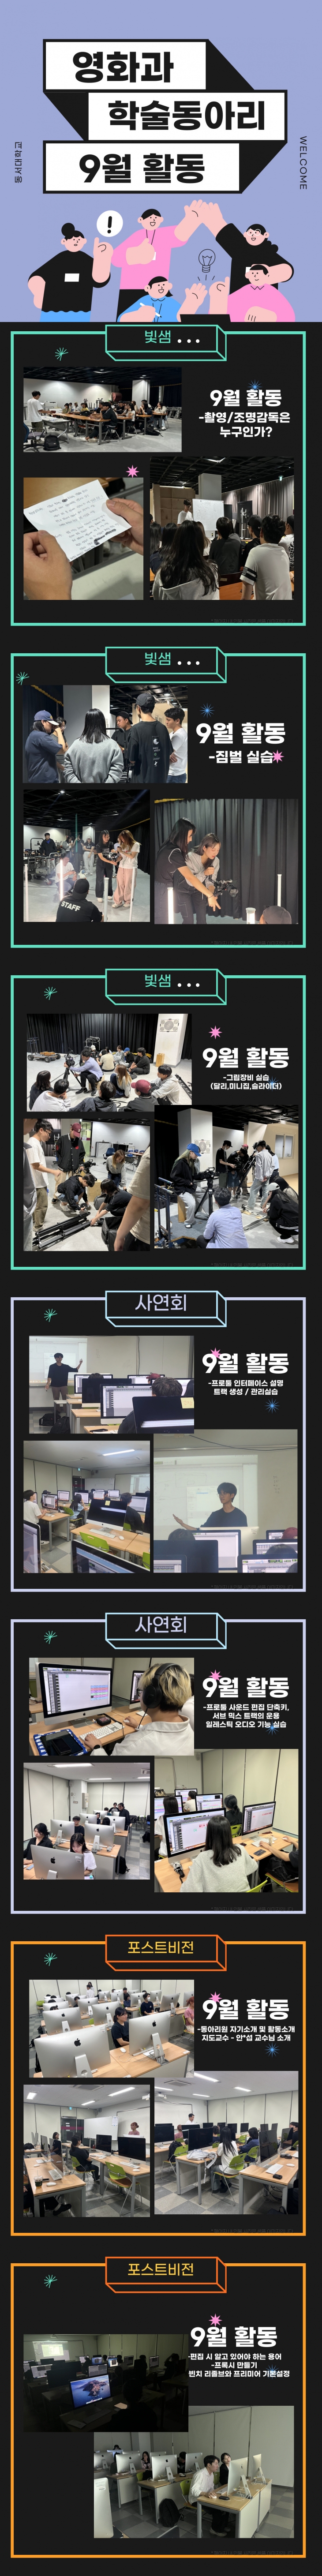 2학기 영화과 동아리 활동(9월)